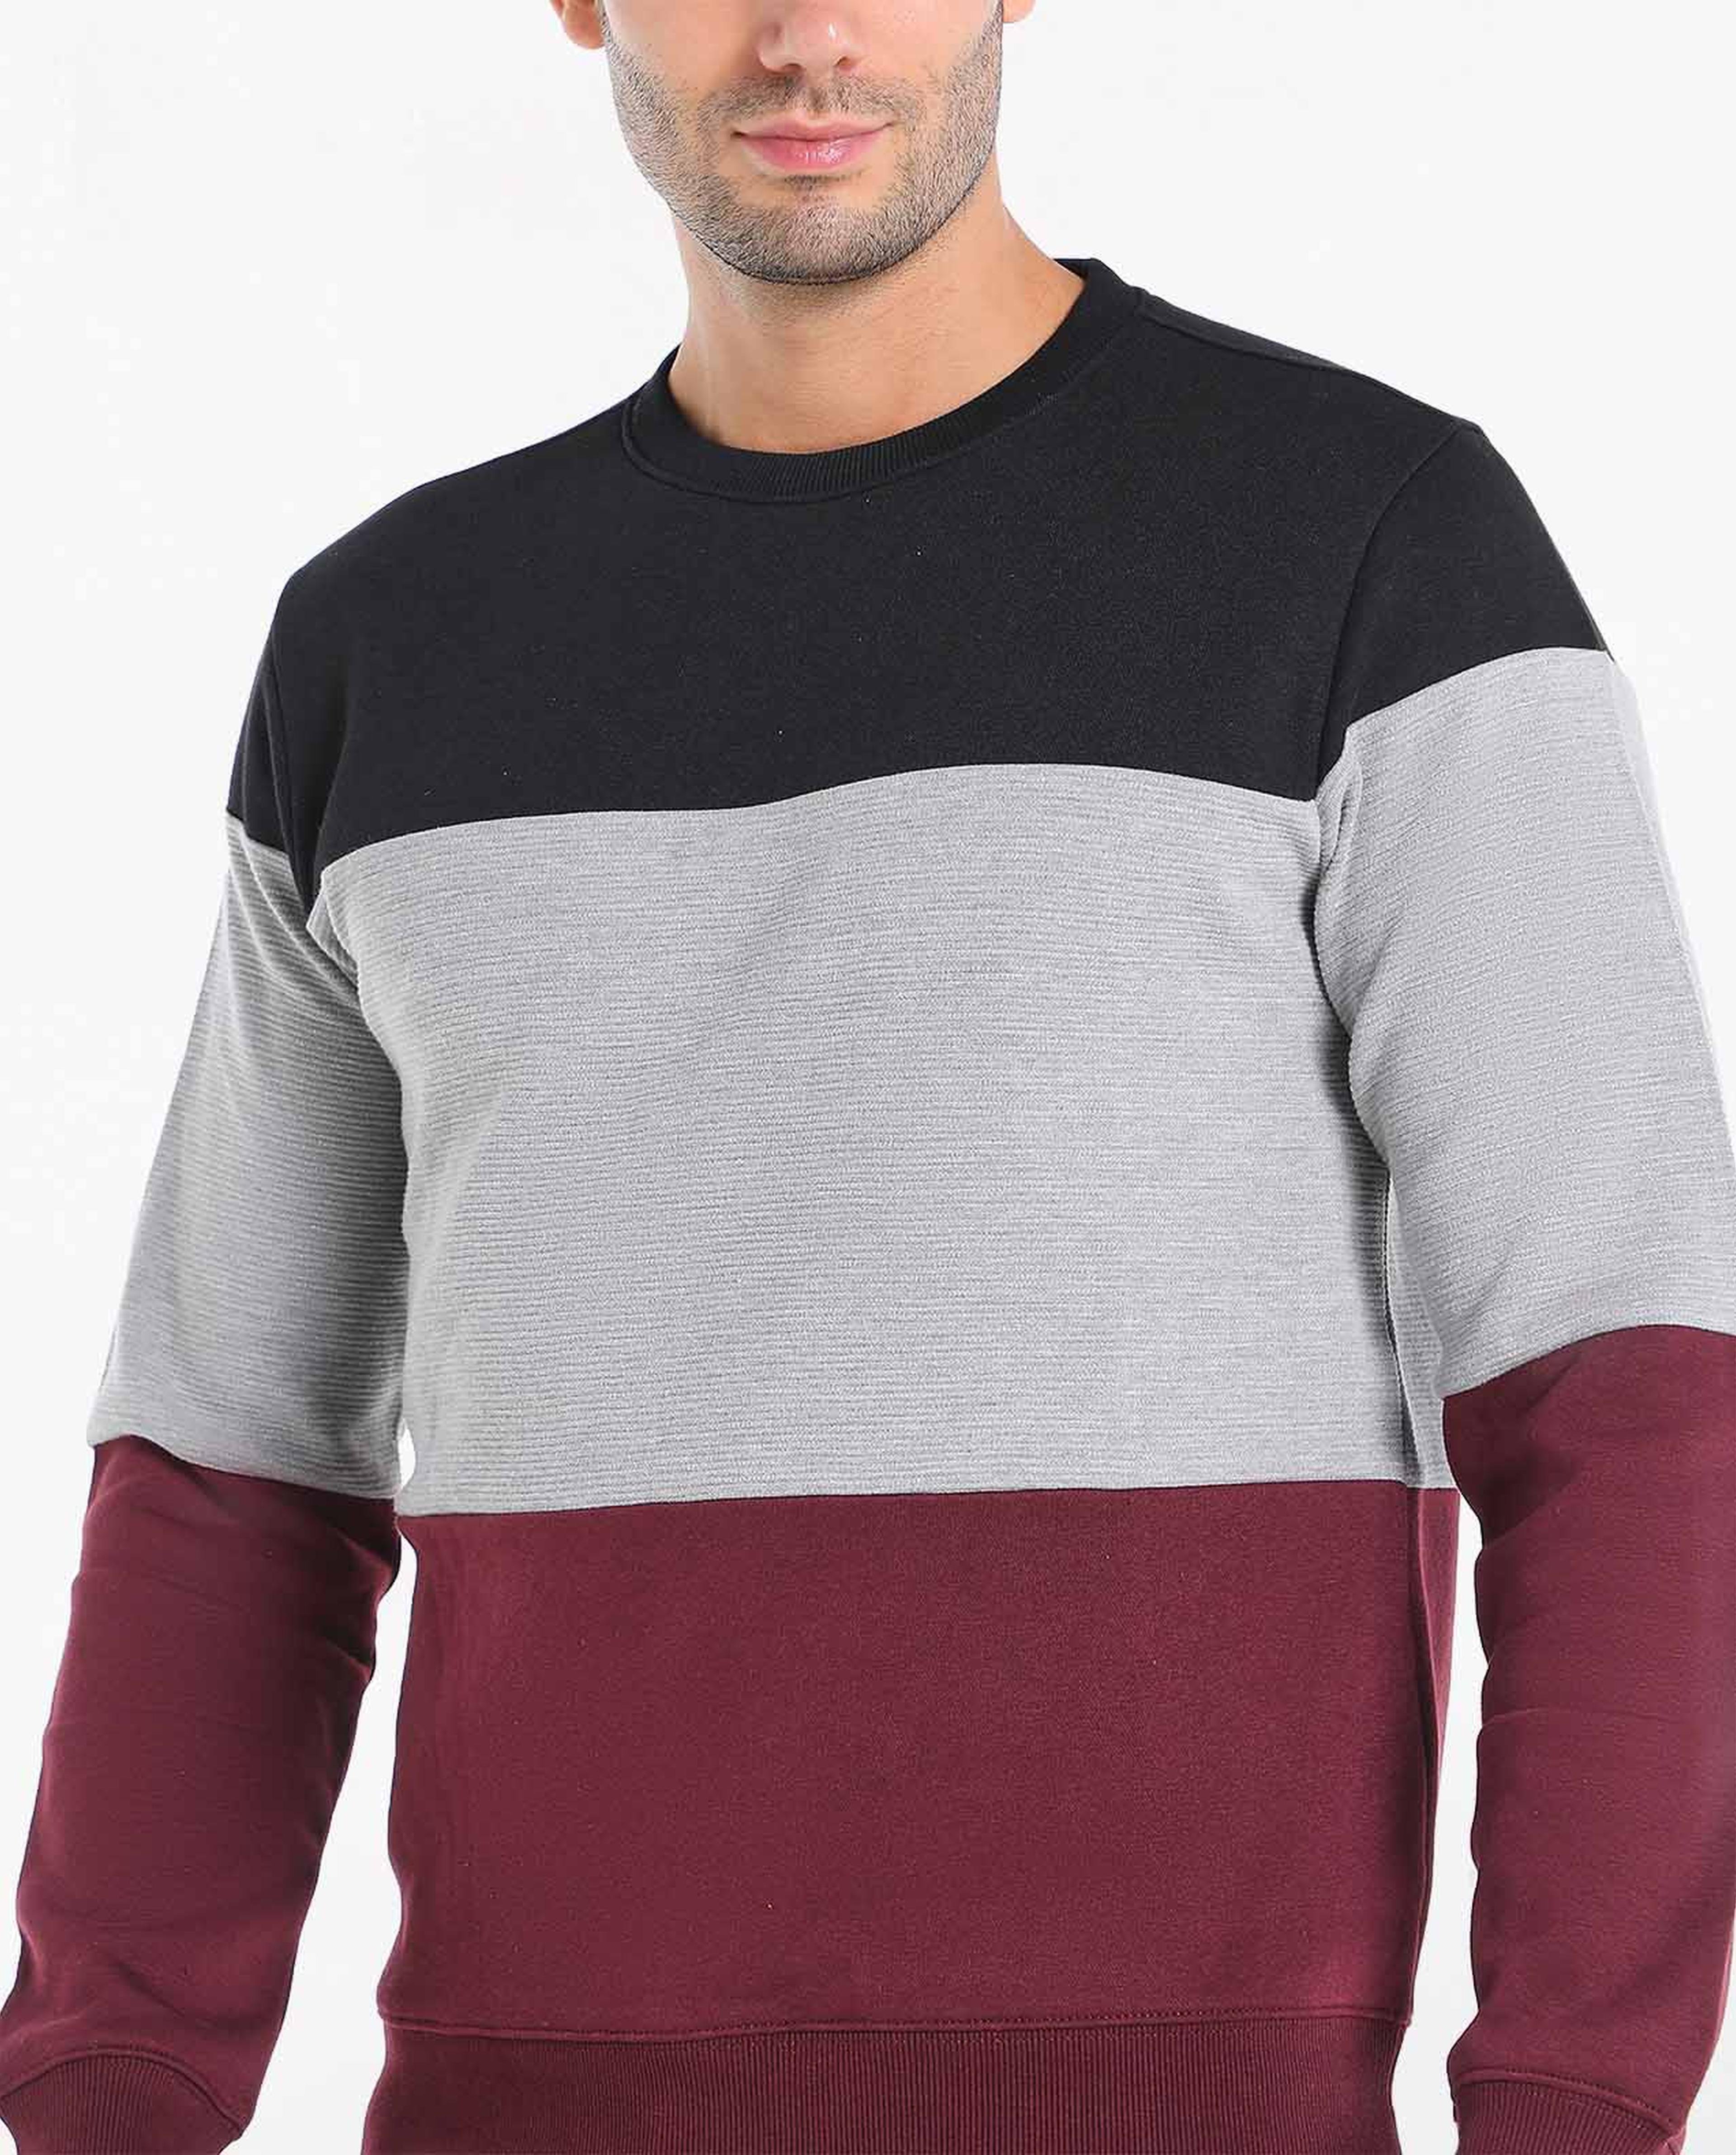 Printed Casual Sweatshirt